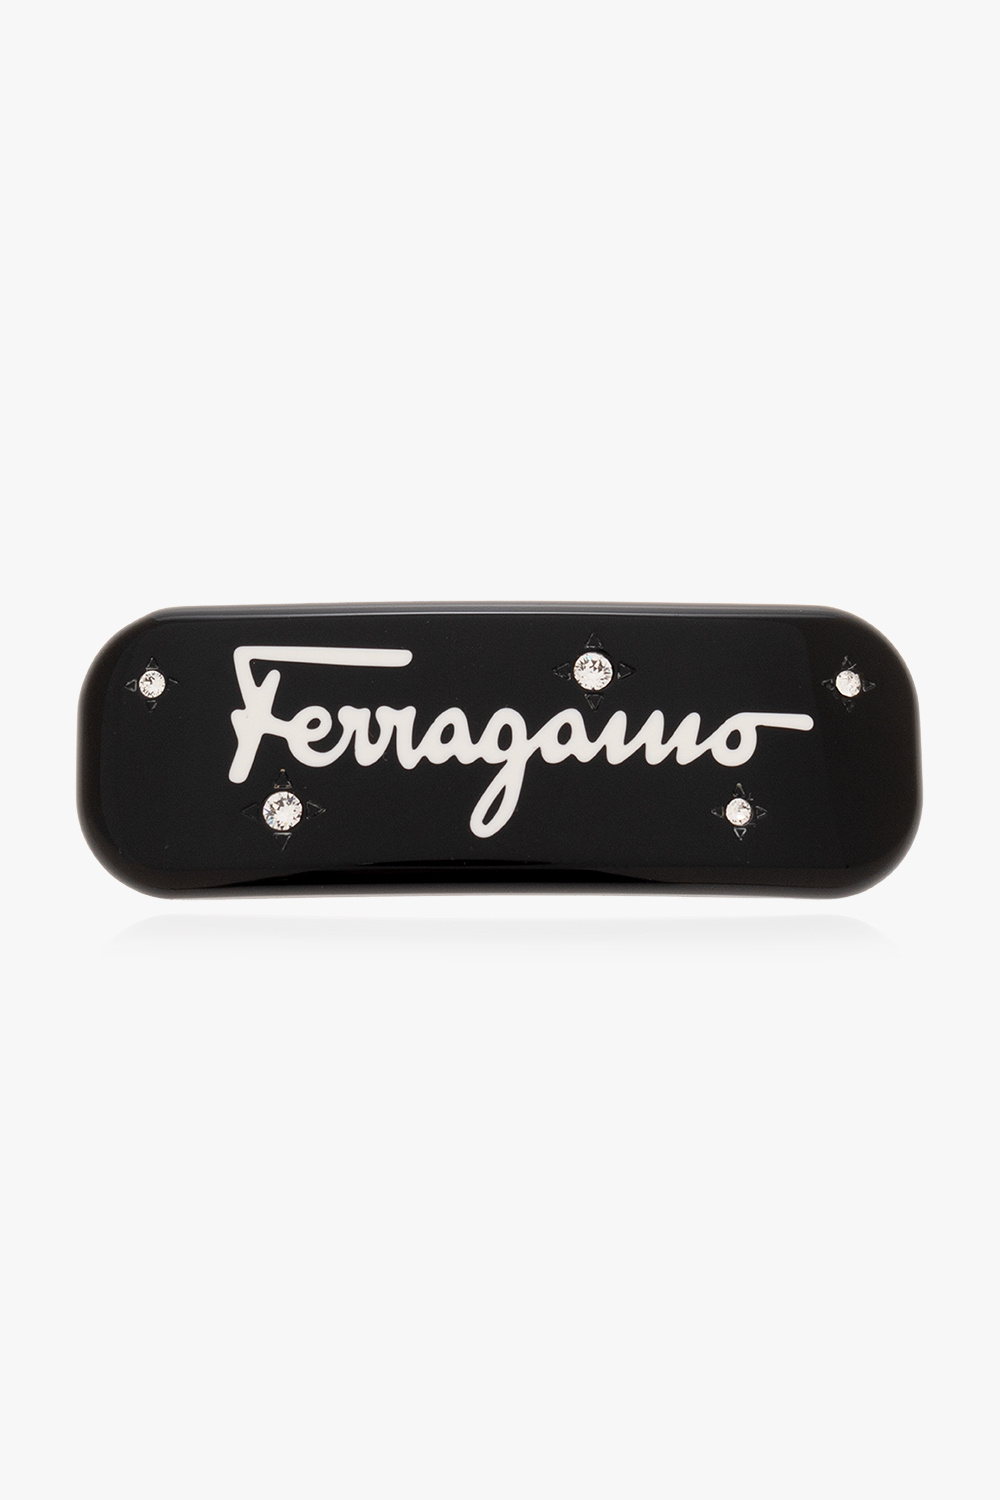 FERRAGAMO button salvatore Ferragamo Uomo Sneaker Gancini Bianco Taglia 38.5